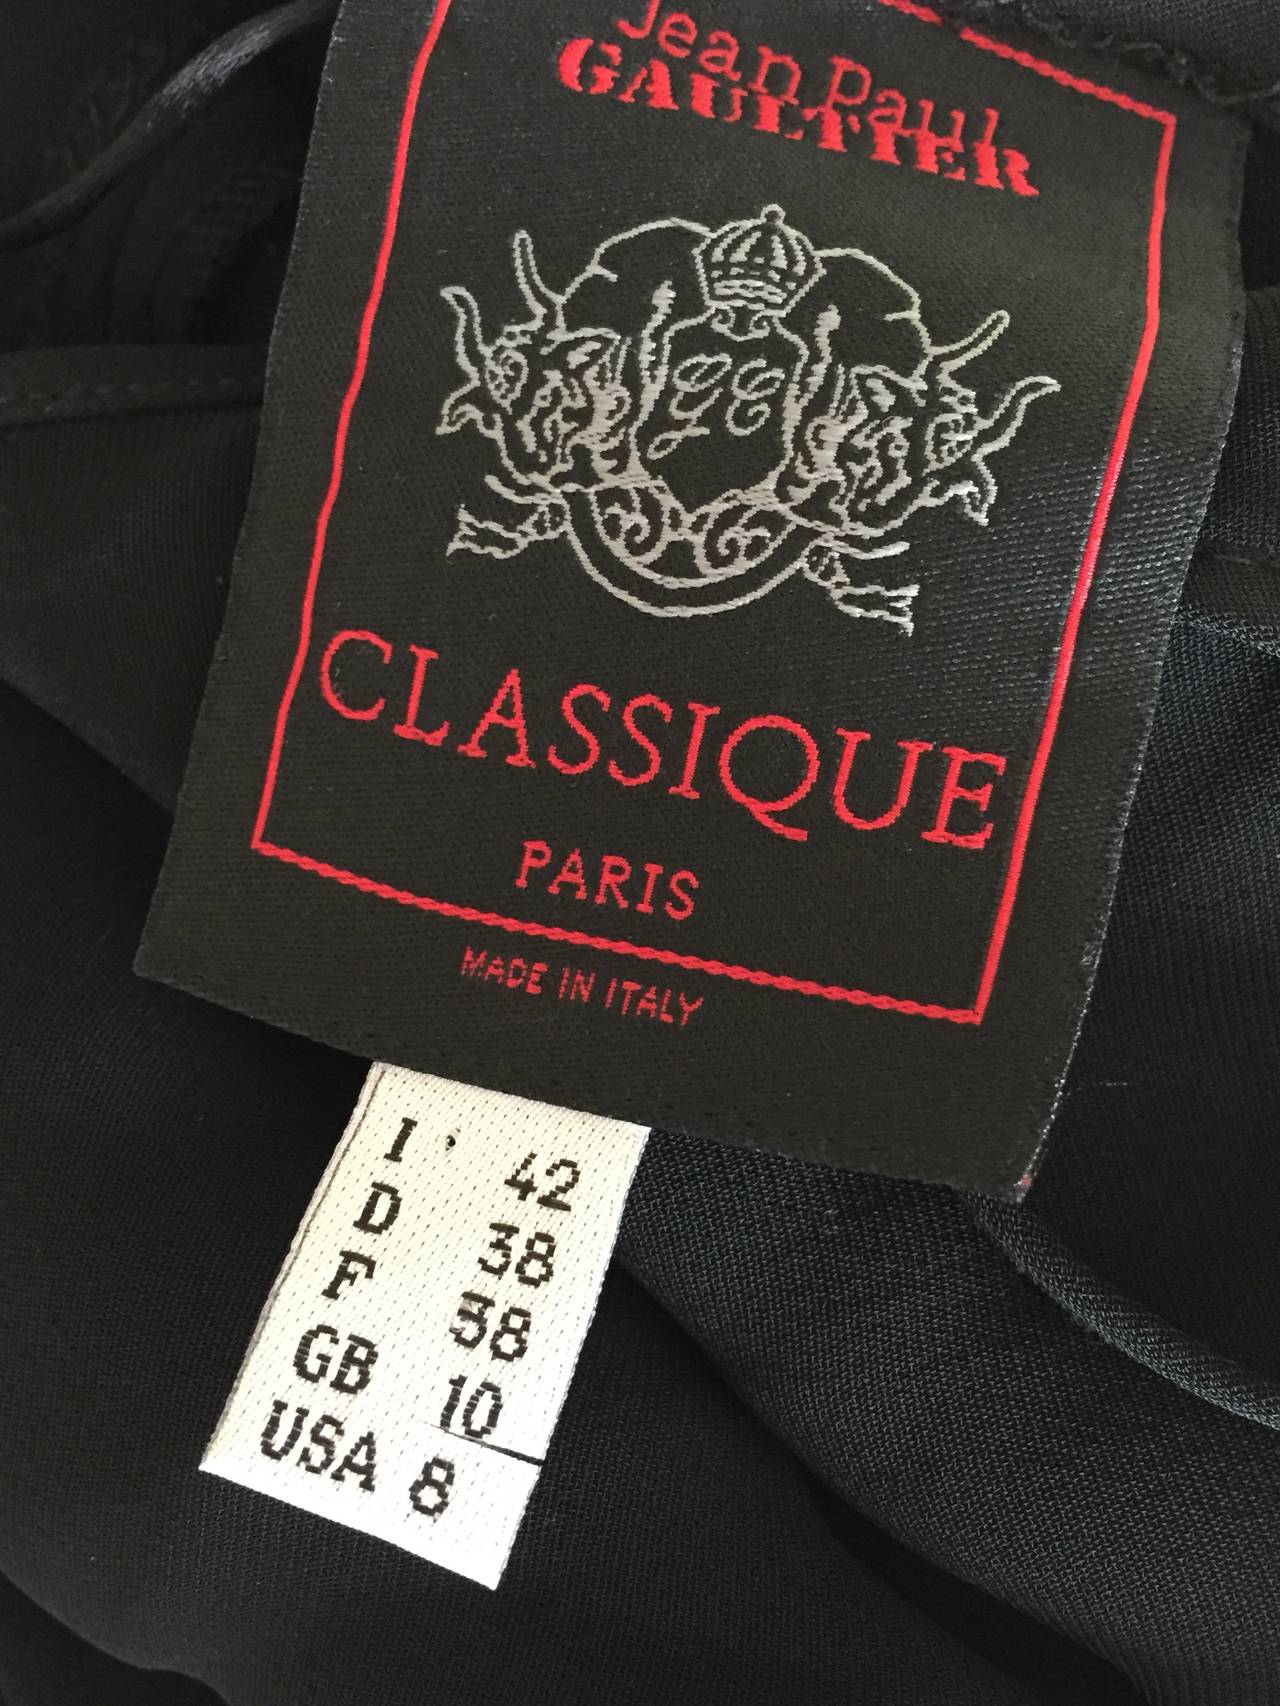 Jean Paul Gaultier Classique Long Black Dress Size 38 3